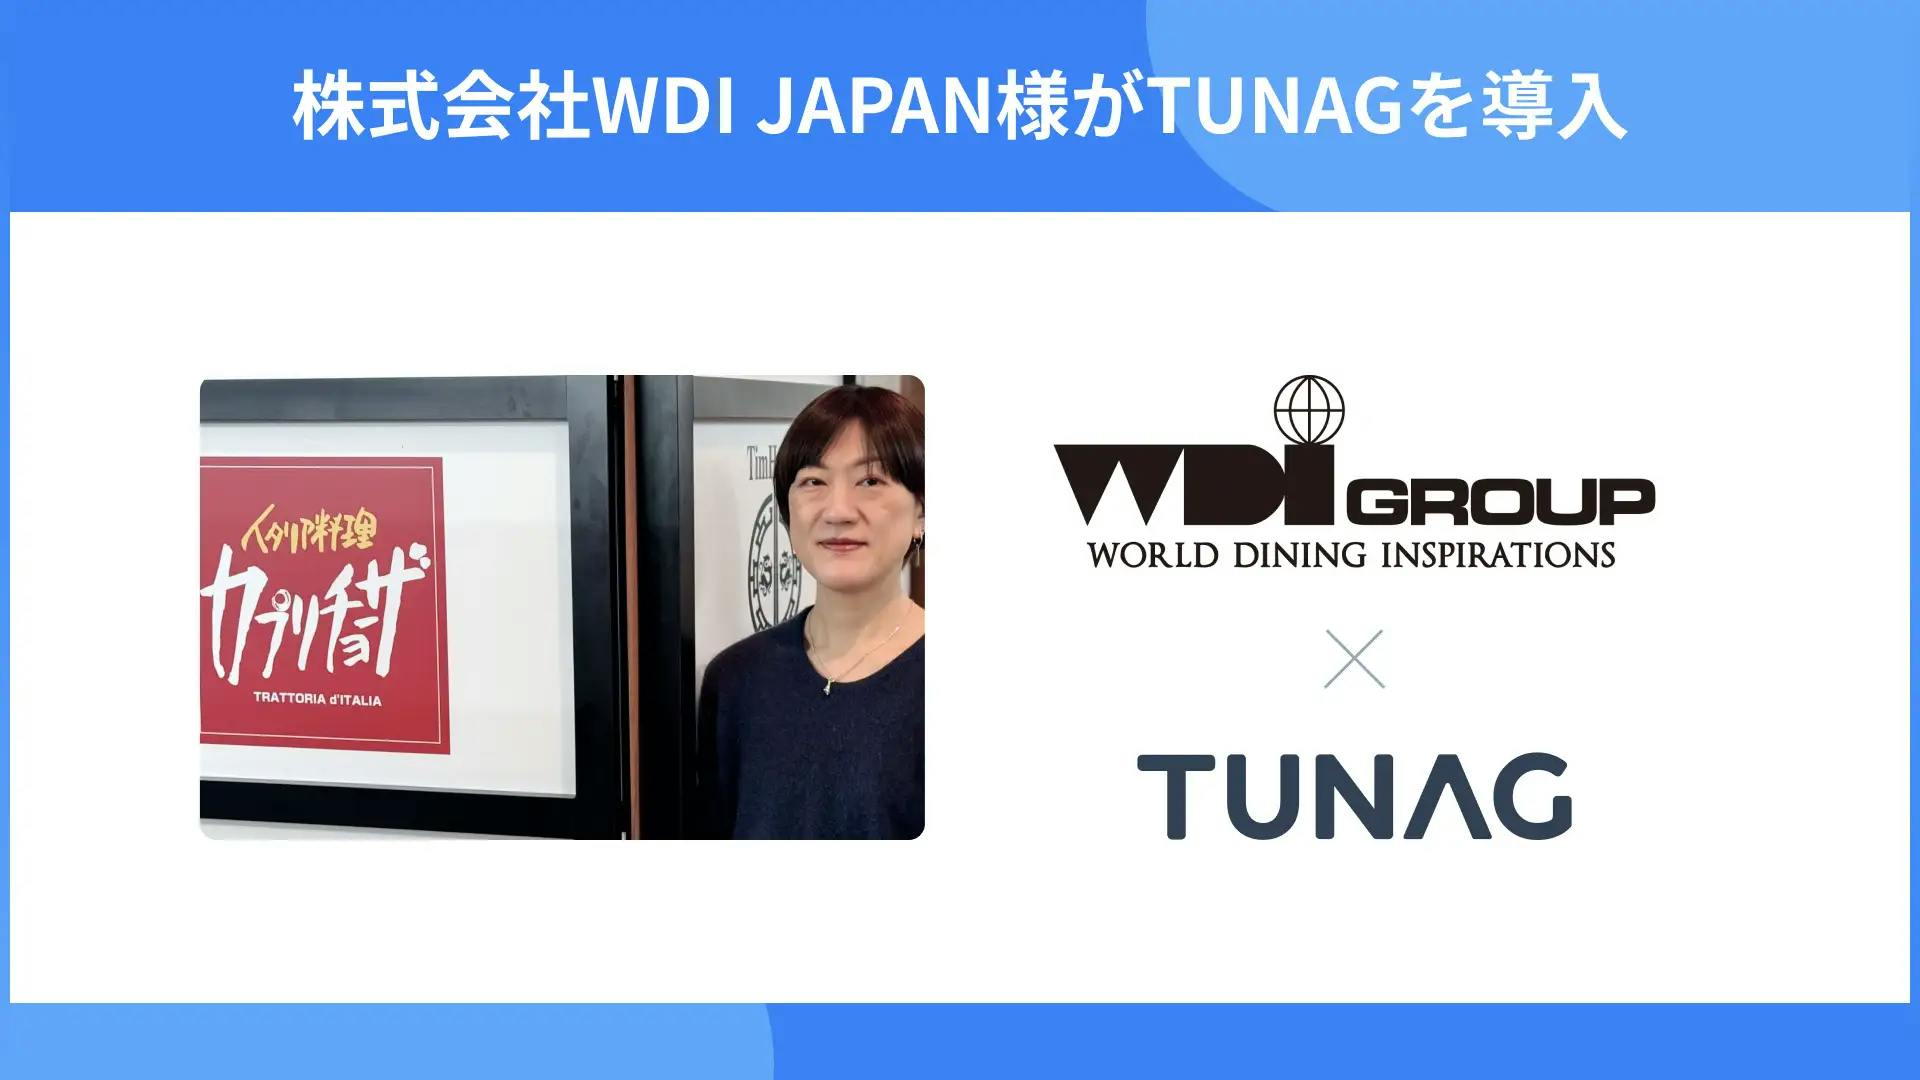 カプリチョーザ、ハードロックカフェなどを展開する株式会社WDI JAPANが「TUNAG」を導入